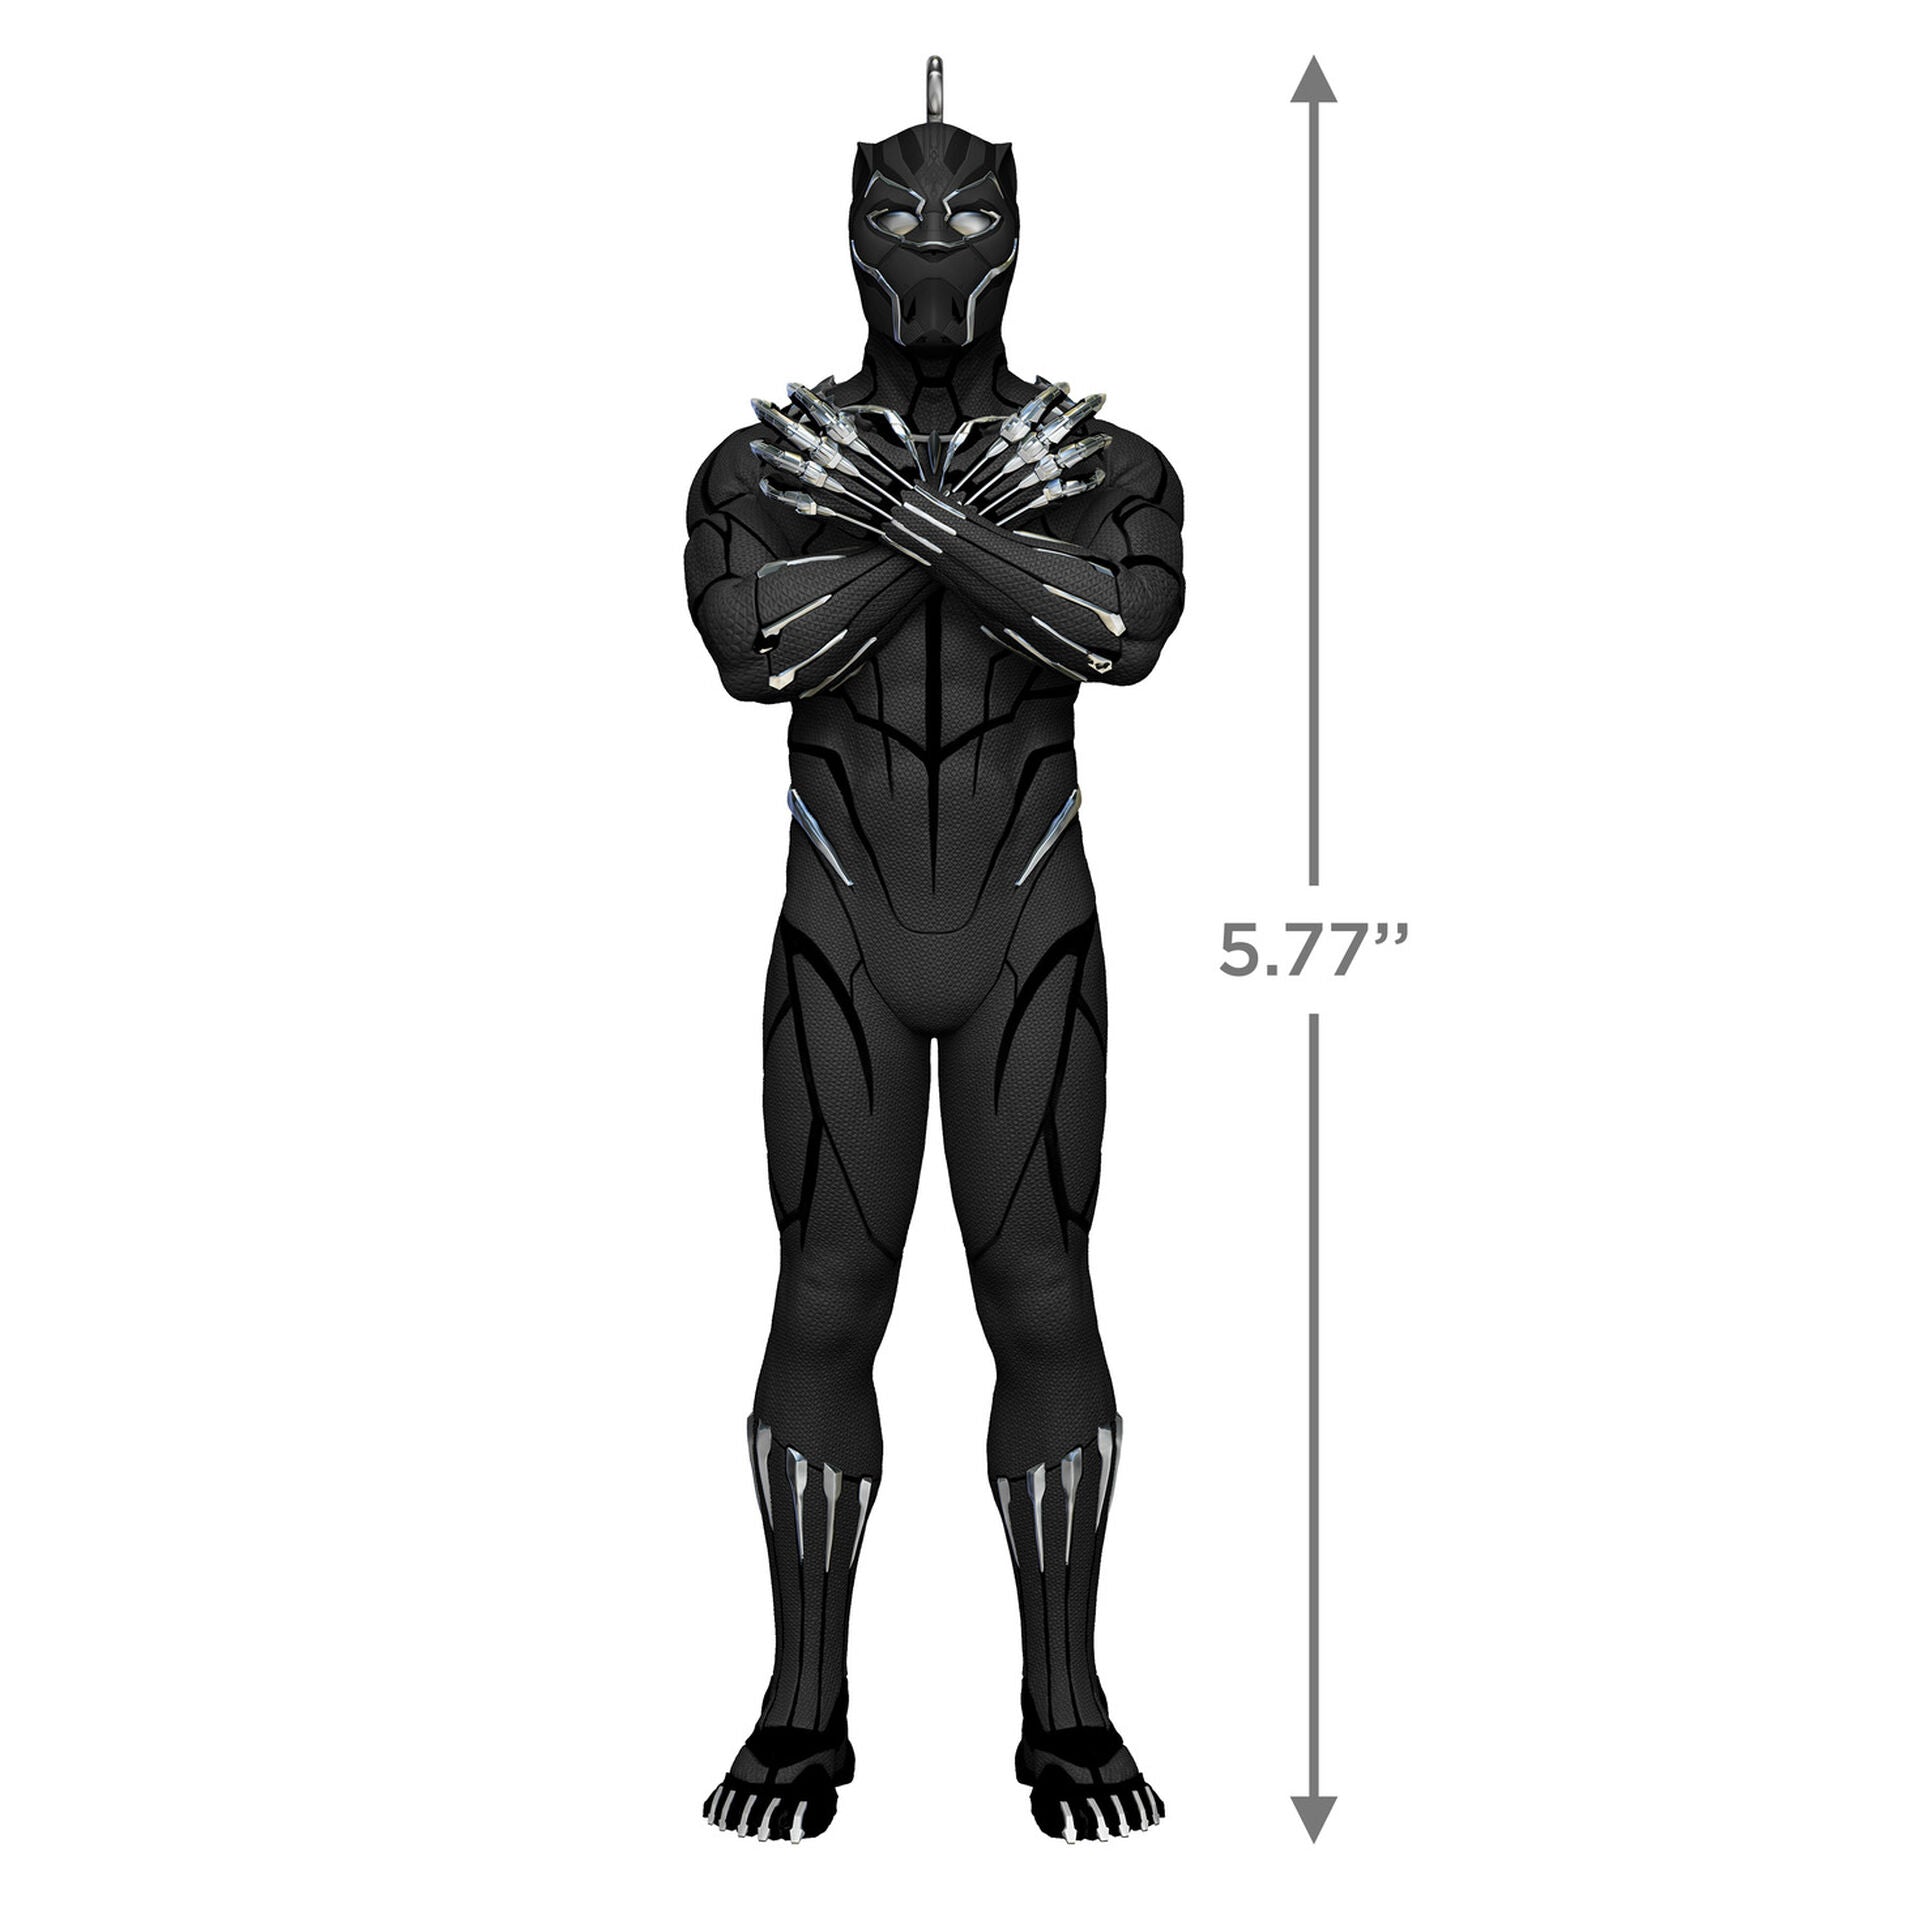 Black Marvel Black Panther Ornament